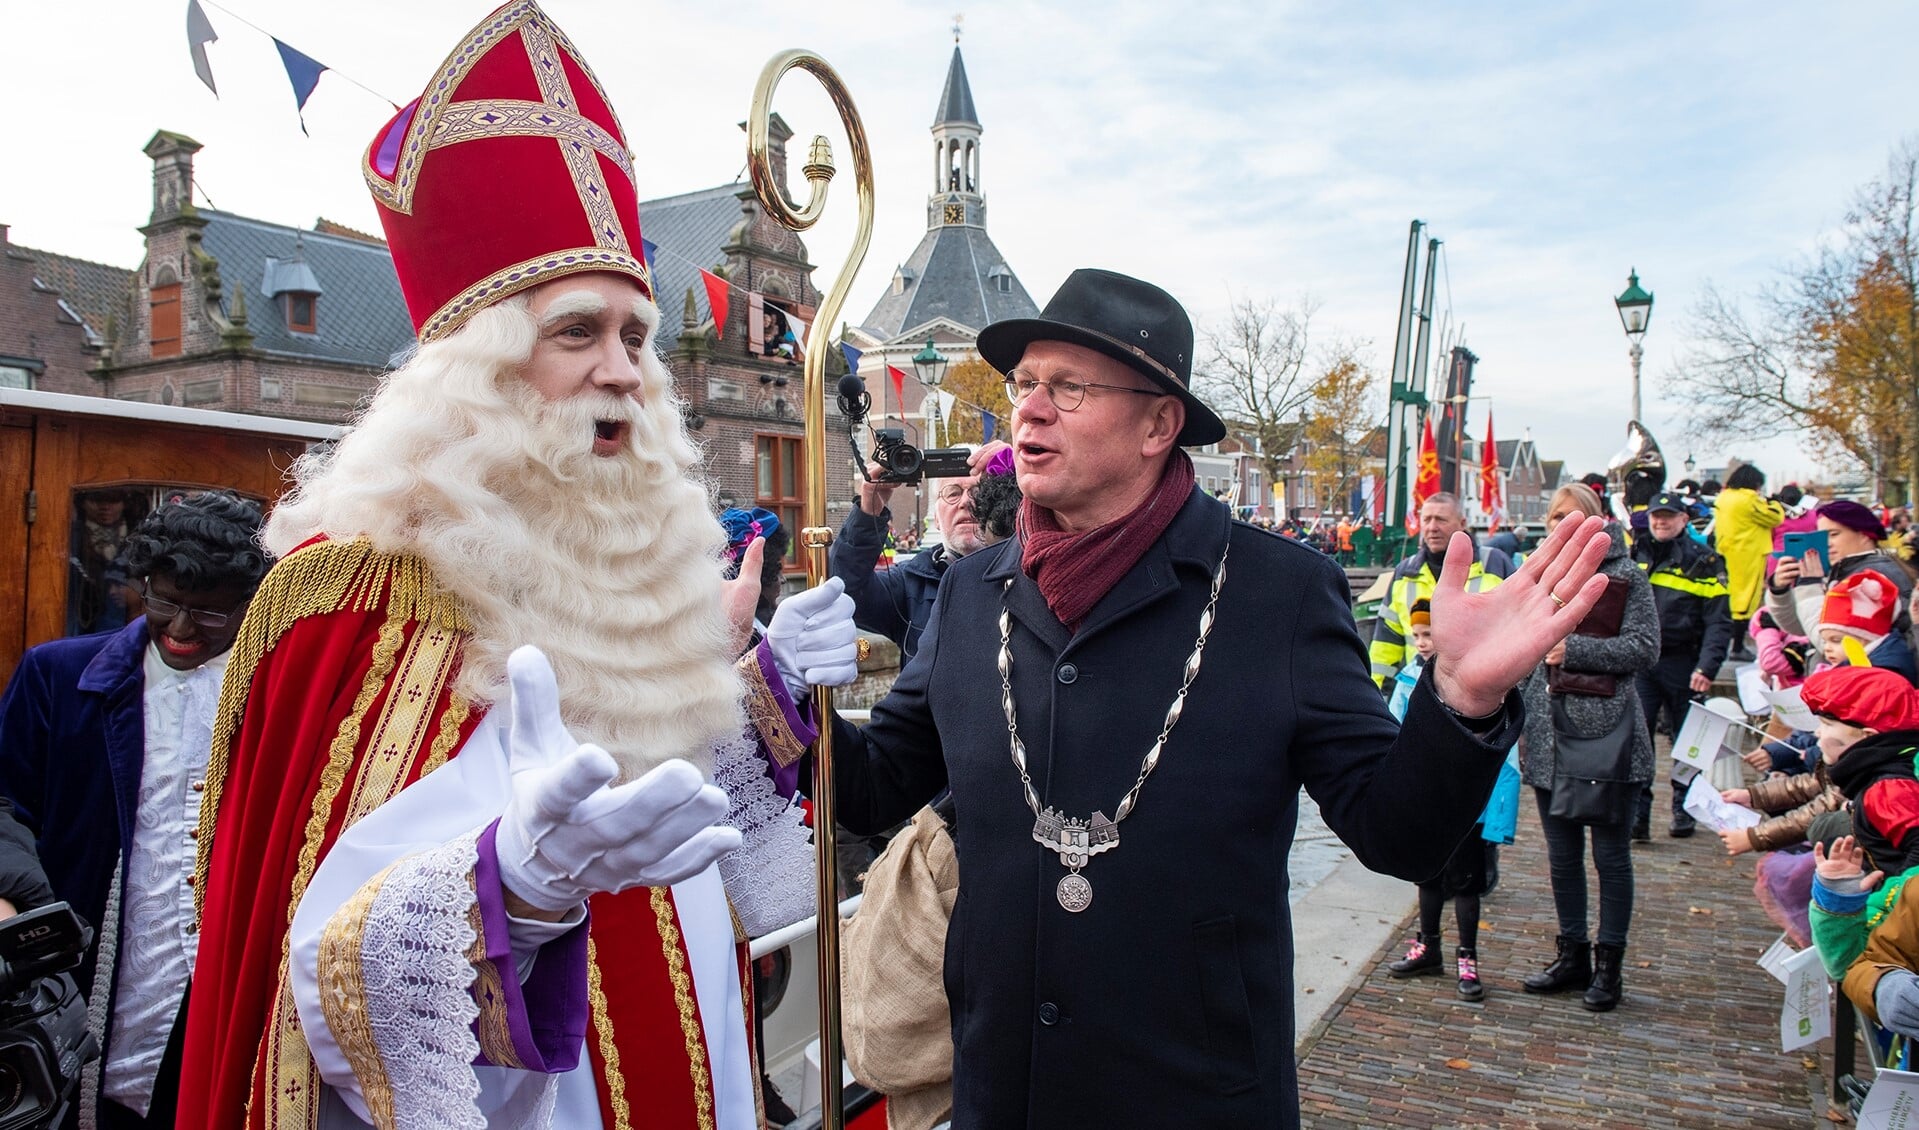 Burgemeester Kaas Tigelaar verwelkomt Sinterklaas in Leidschendam (Foto's: Michel Groen).